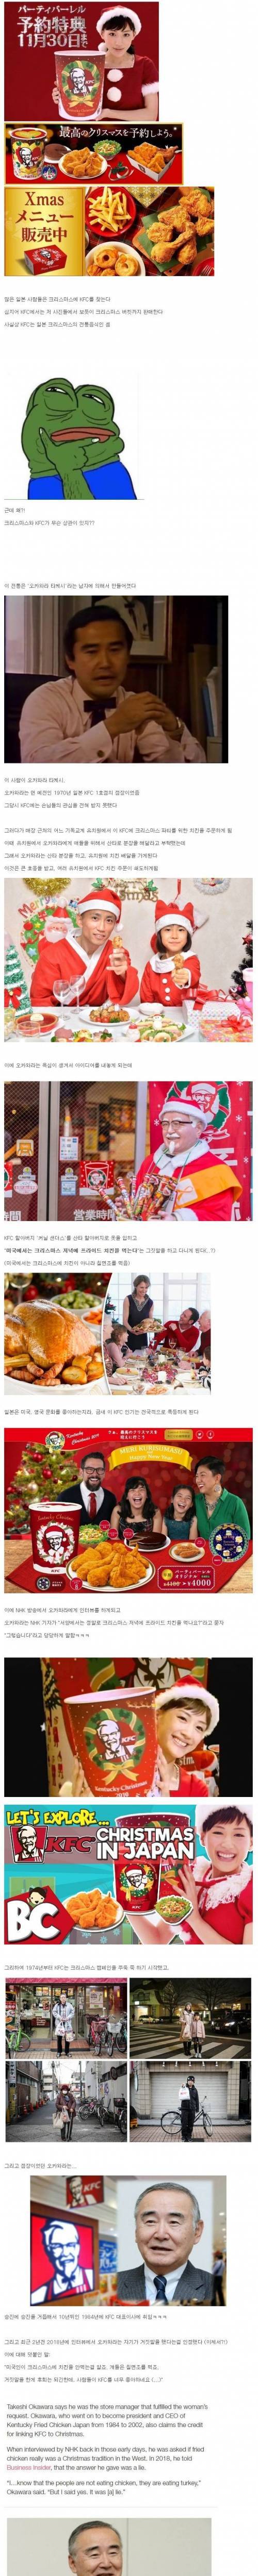 8 일본 사람들이 크리스마스에 KFC를 먹게 된 이유.jpg